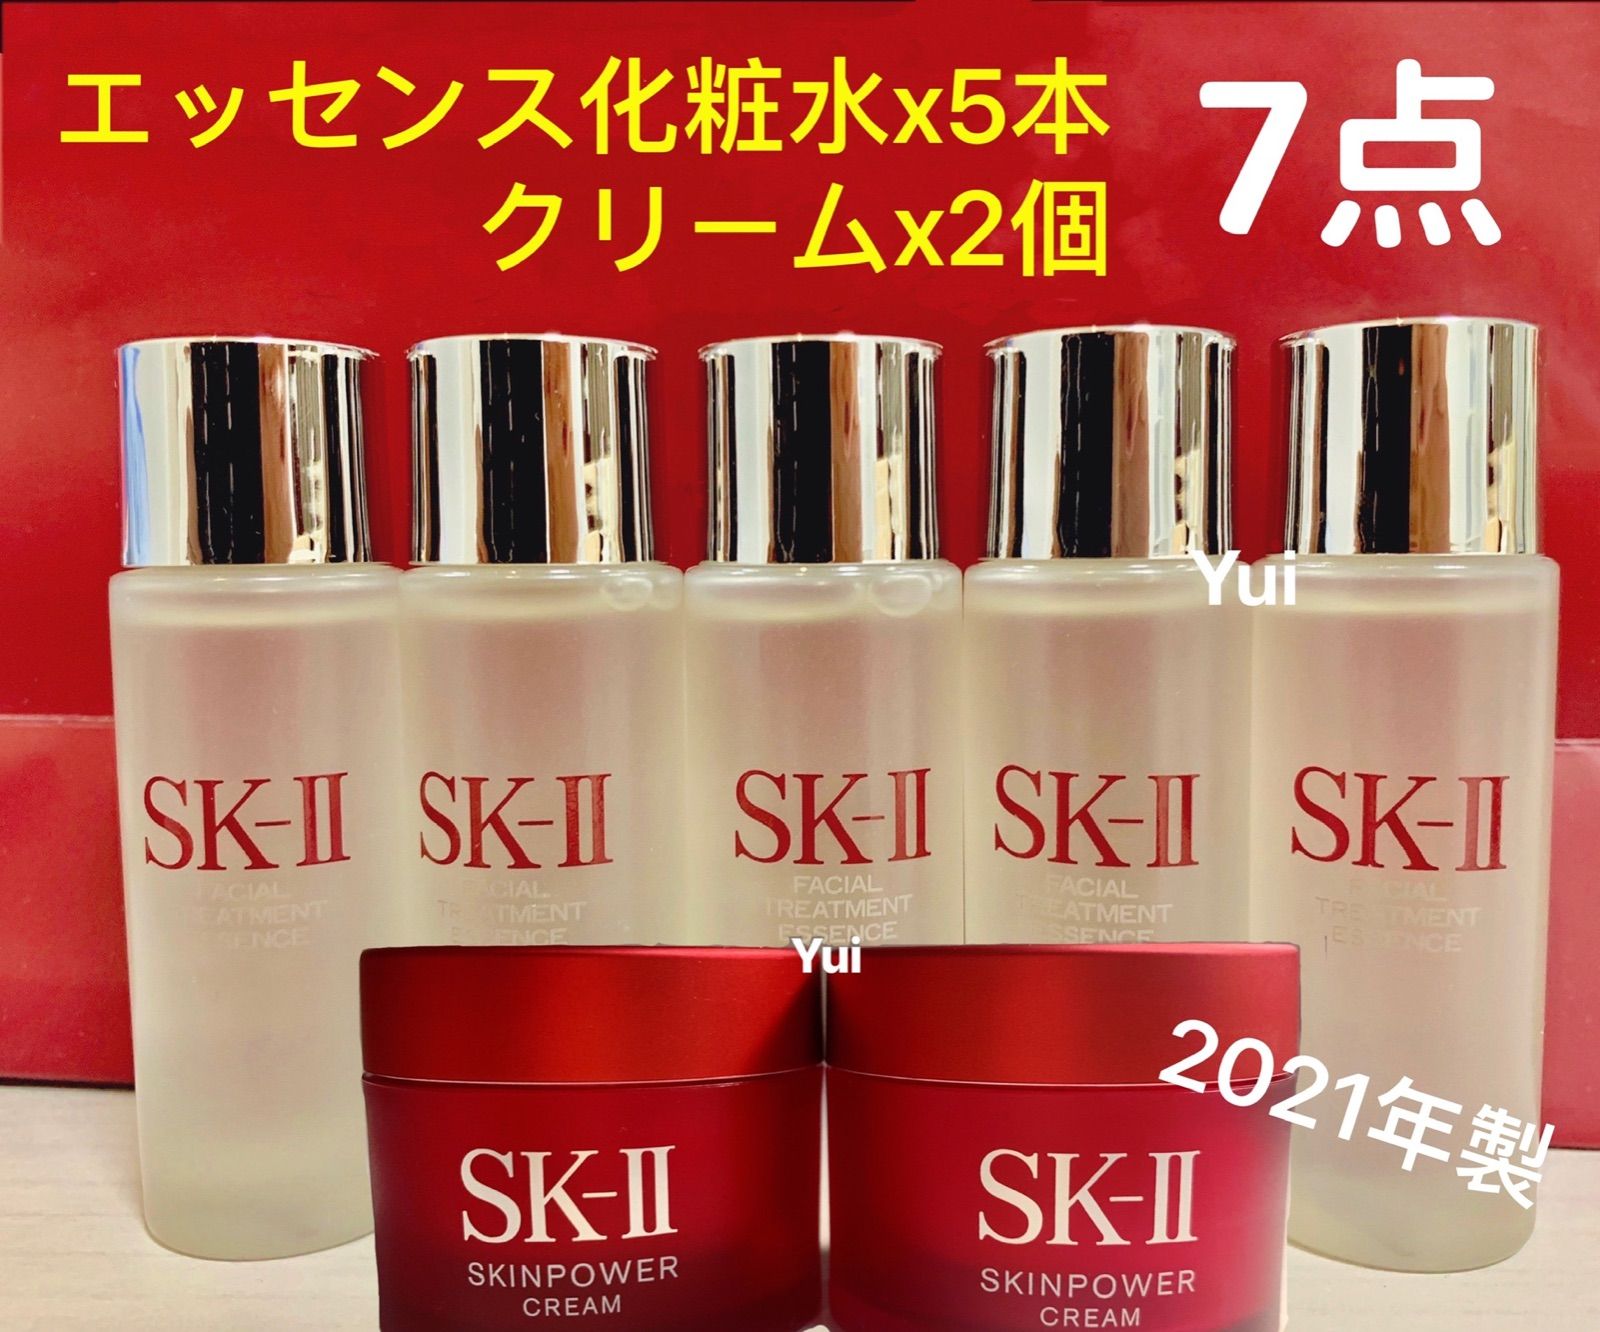 【ために】 SK-II - SK-II エスケーツー エッセンス 化粧水 スキンパワー クリーム5点セットの通販 by Robin 『SK